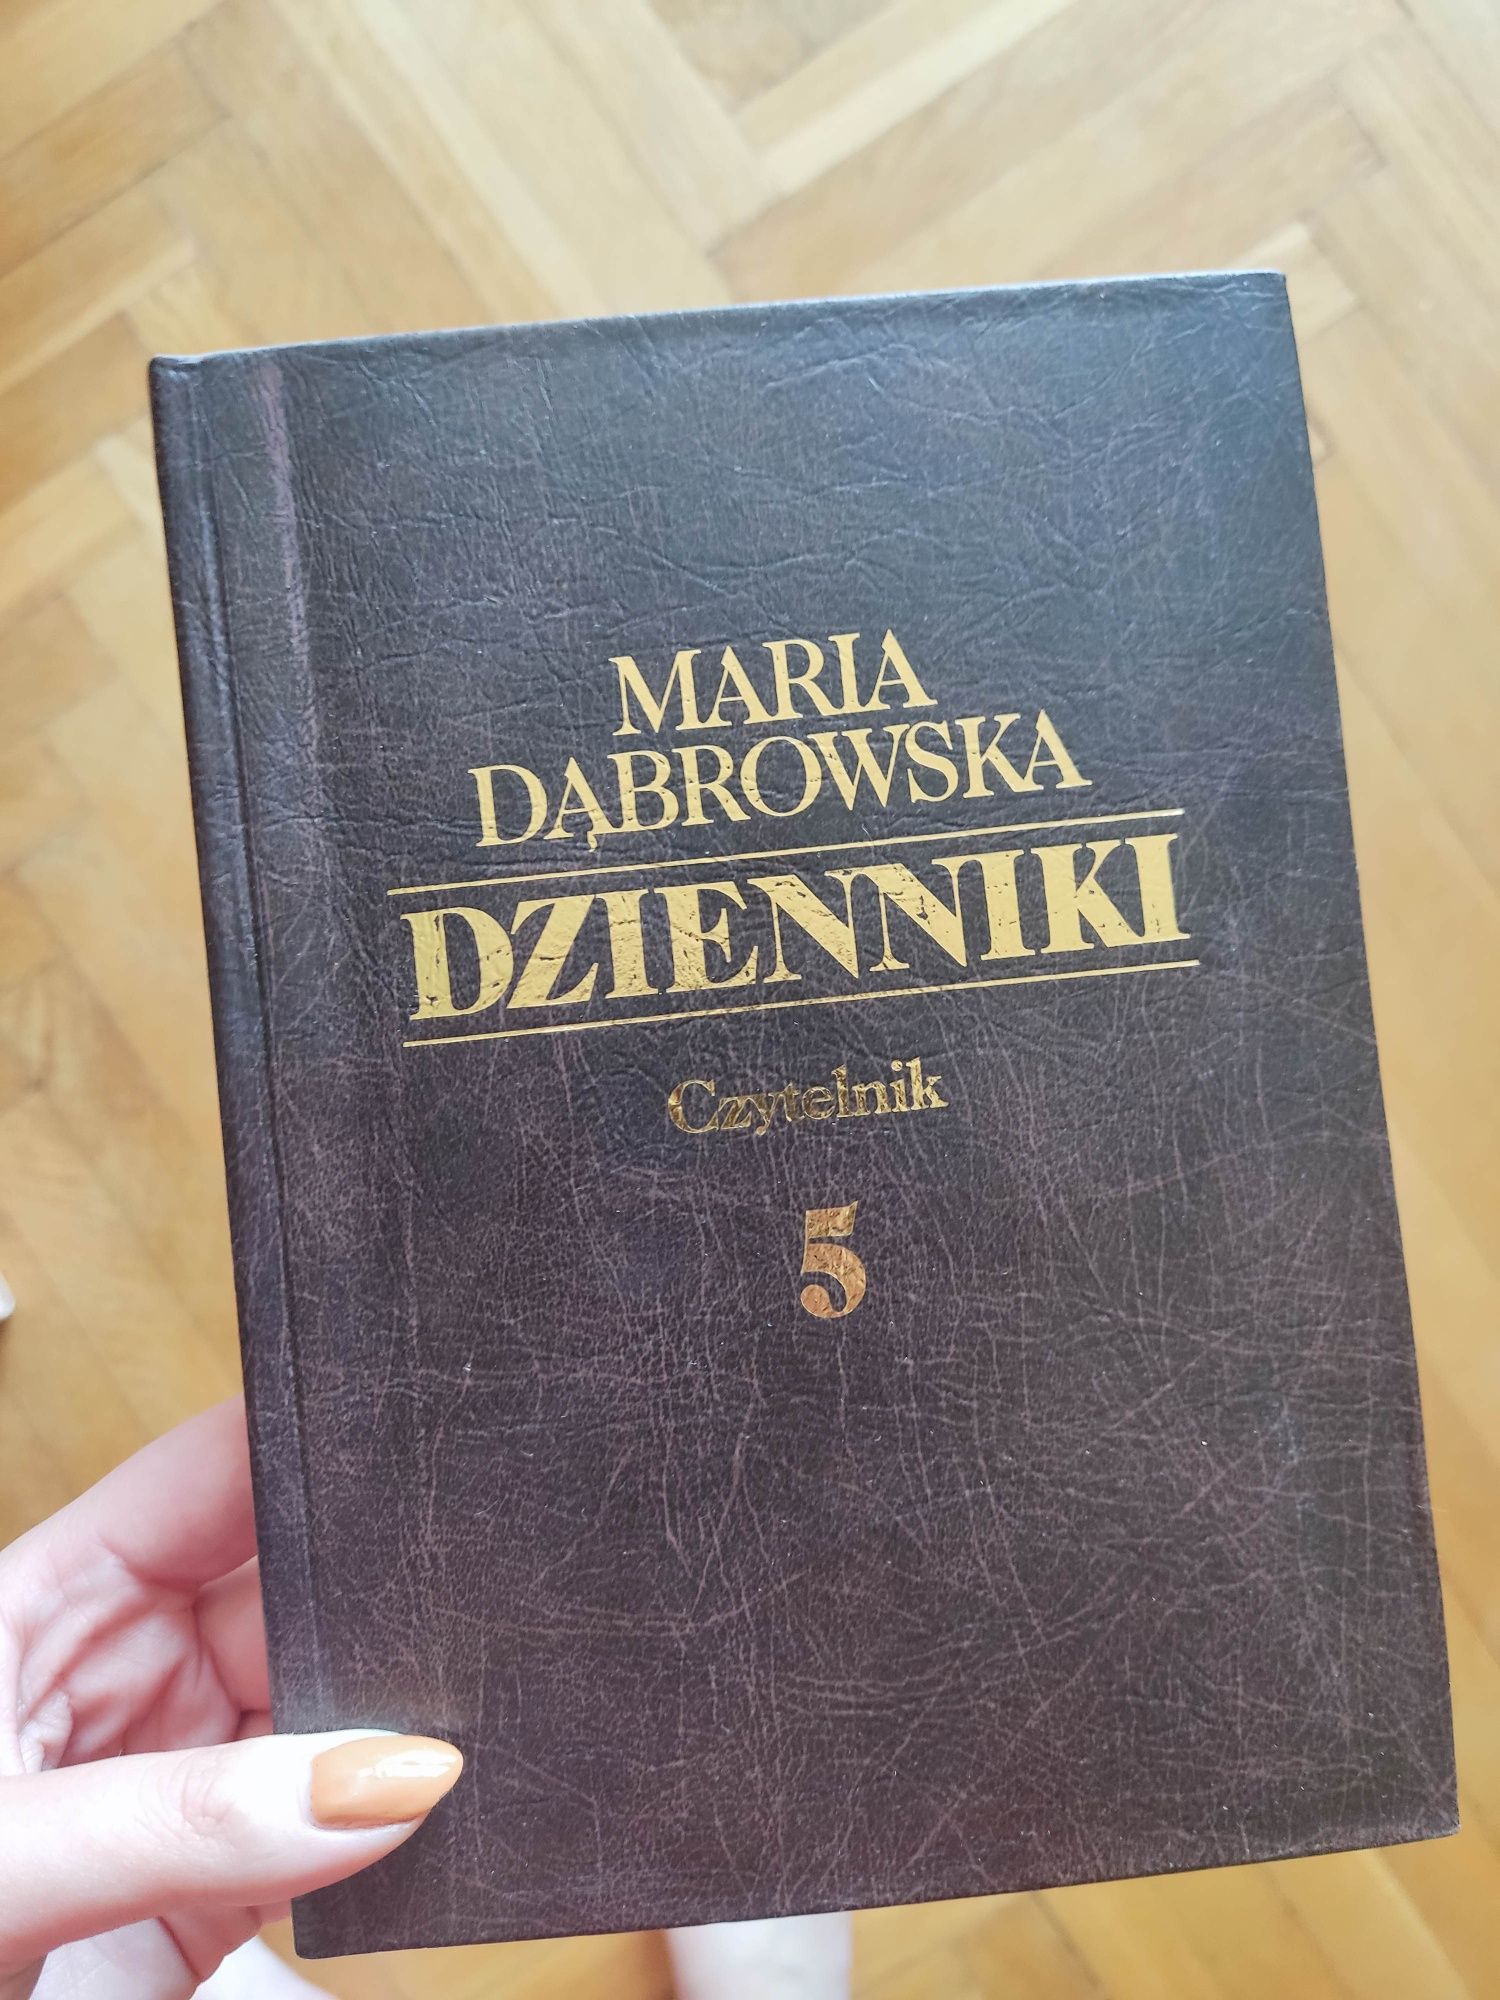 Dzienniki M. Dąbrowska 1-5 tomy zestaw twarda oprawa w idealnym stanie